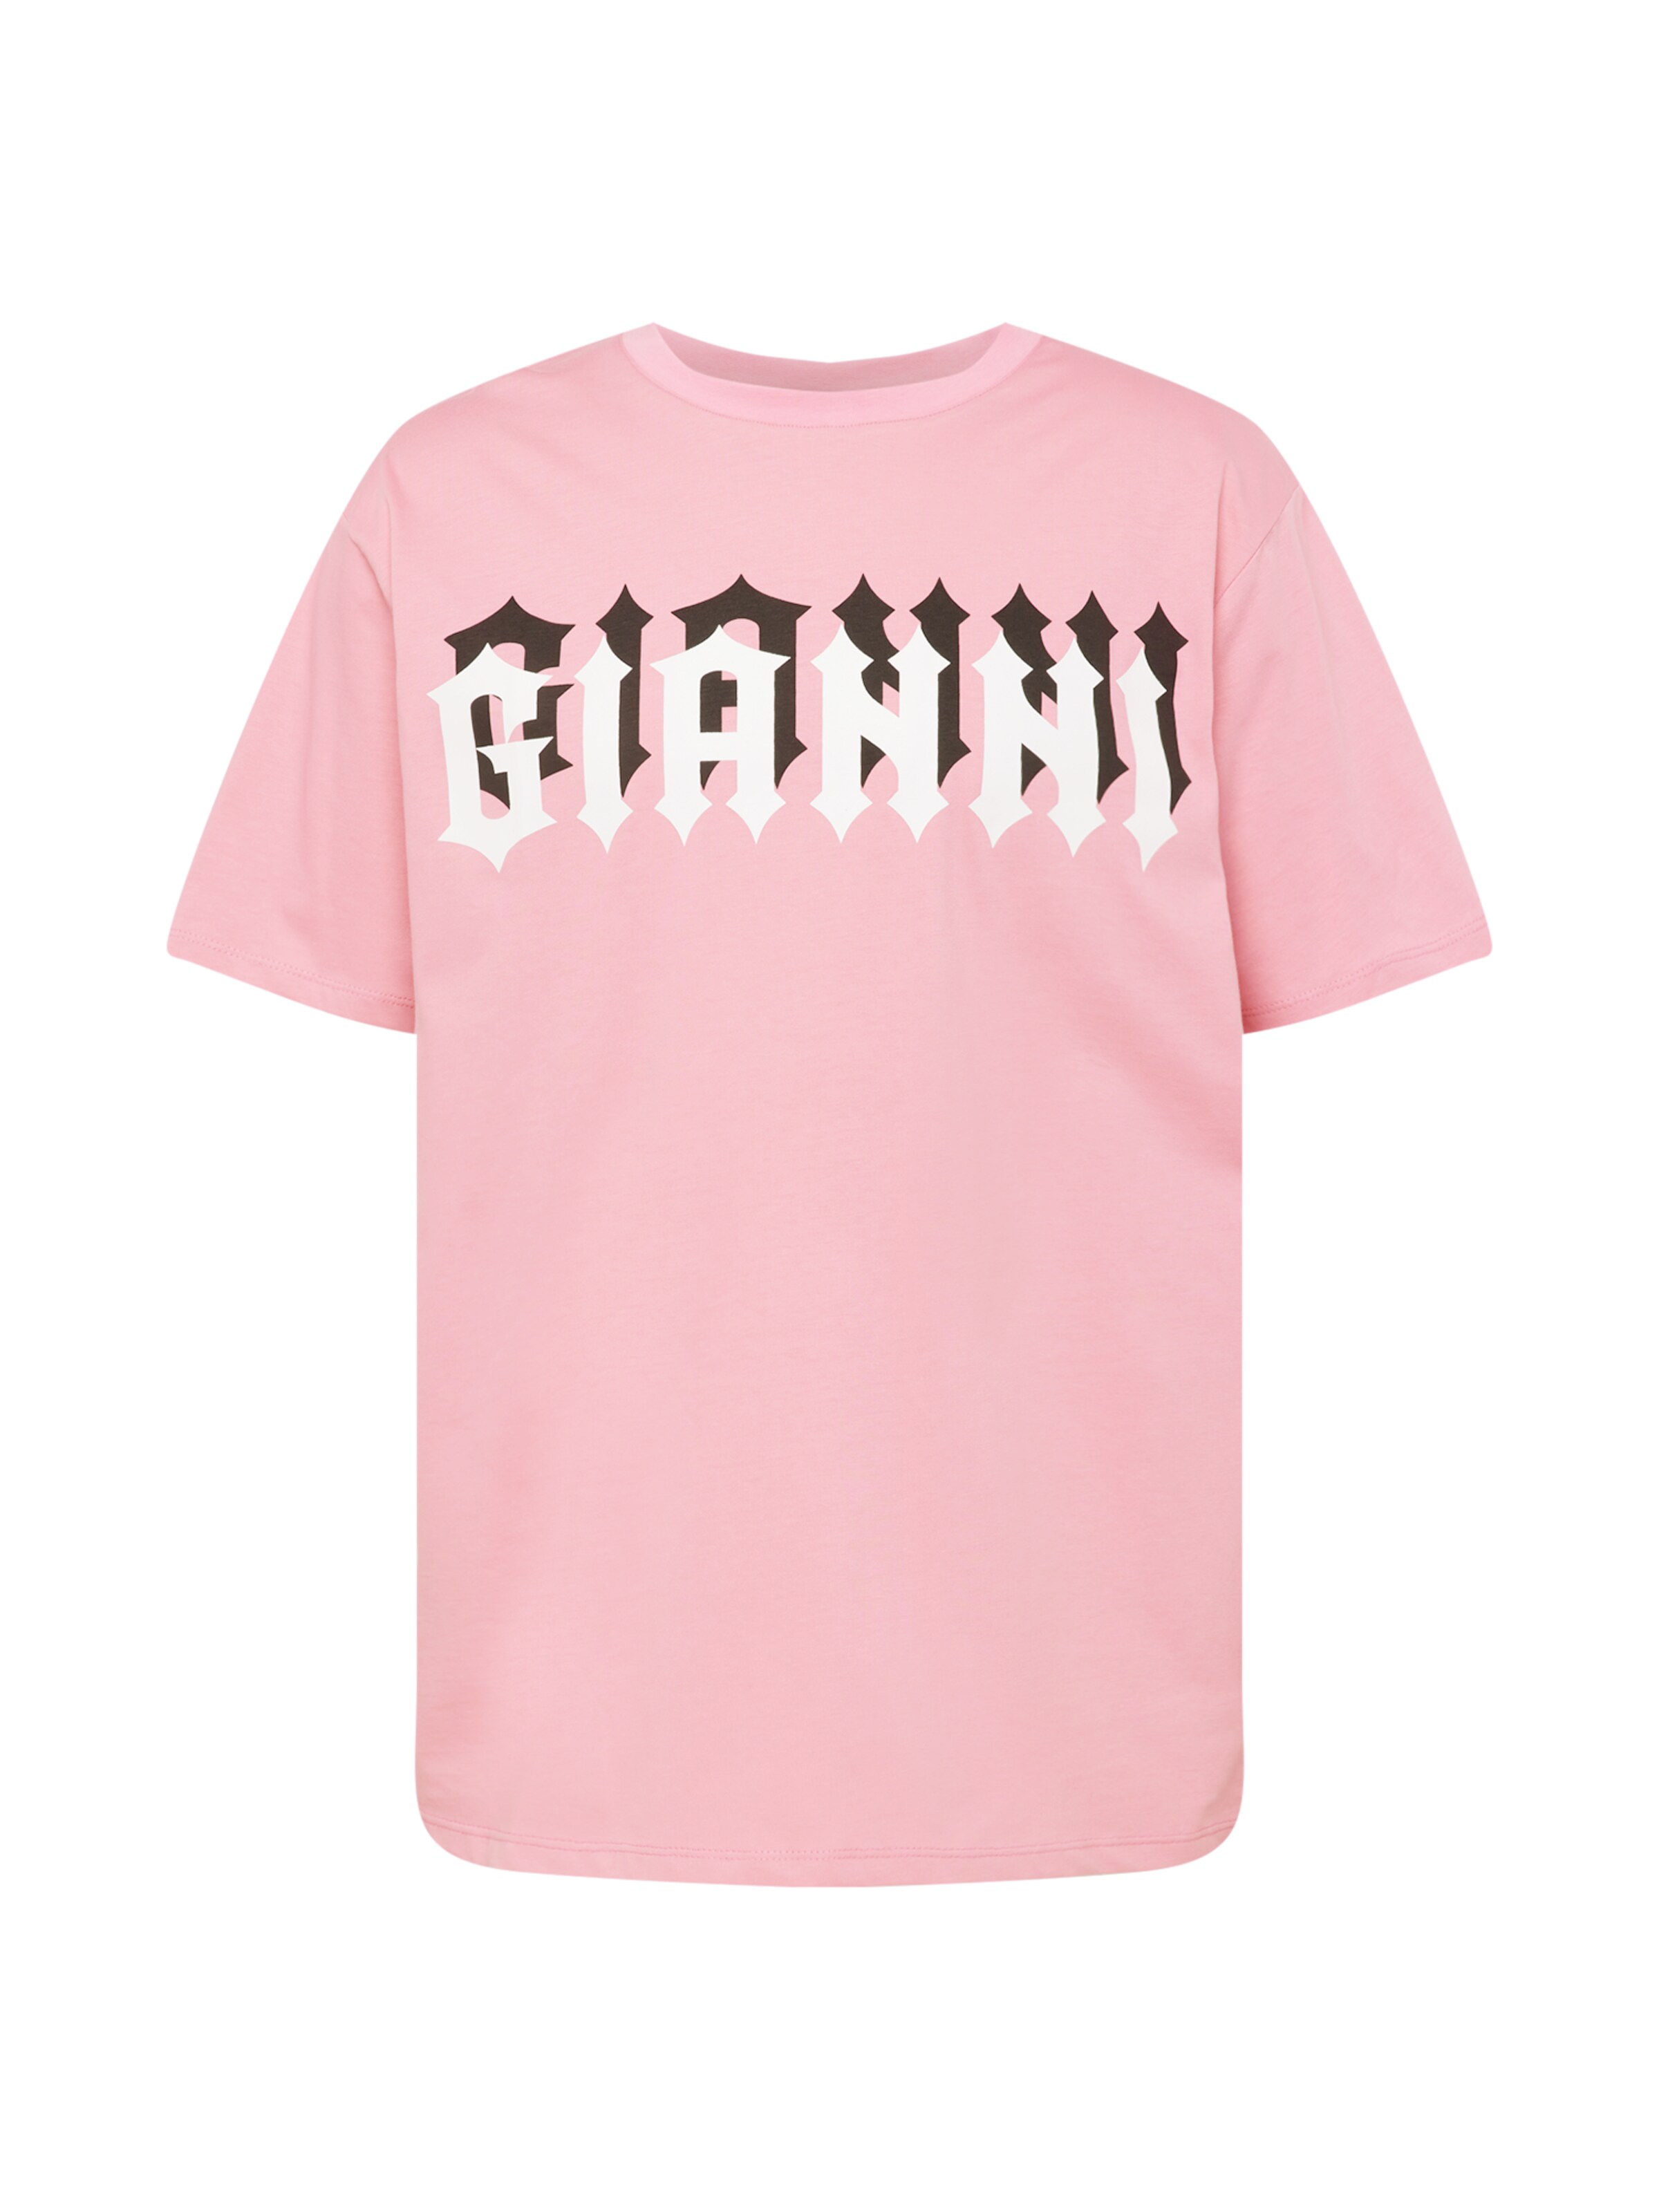 DAMEN Hemden & T-Shirts T-Shirt Print Primark T-Shirt Rabatt 83 % Dunkelblau/Weiß 32 